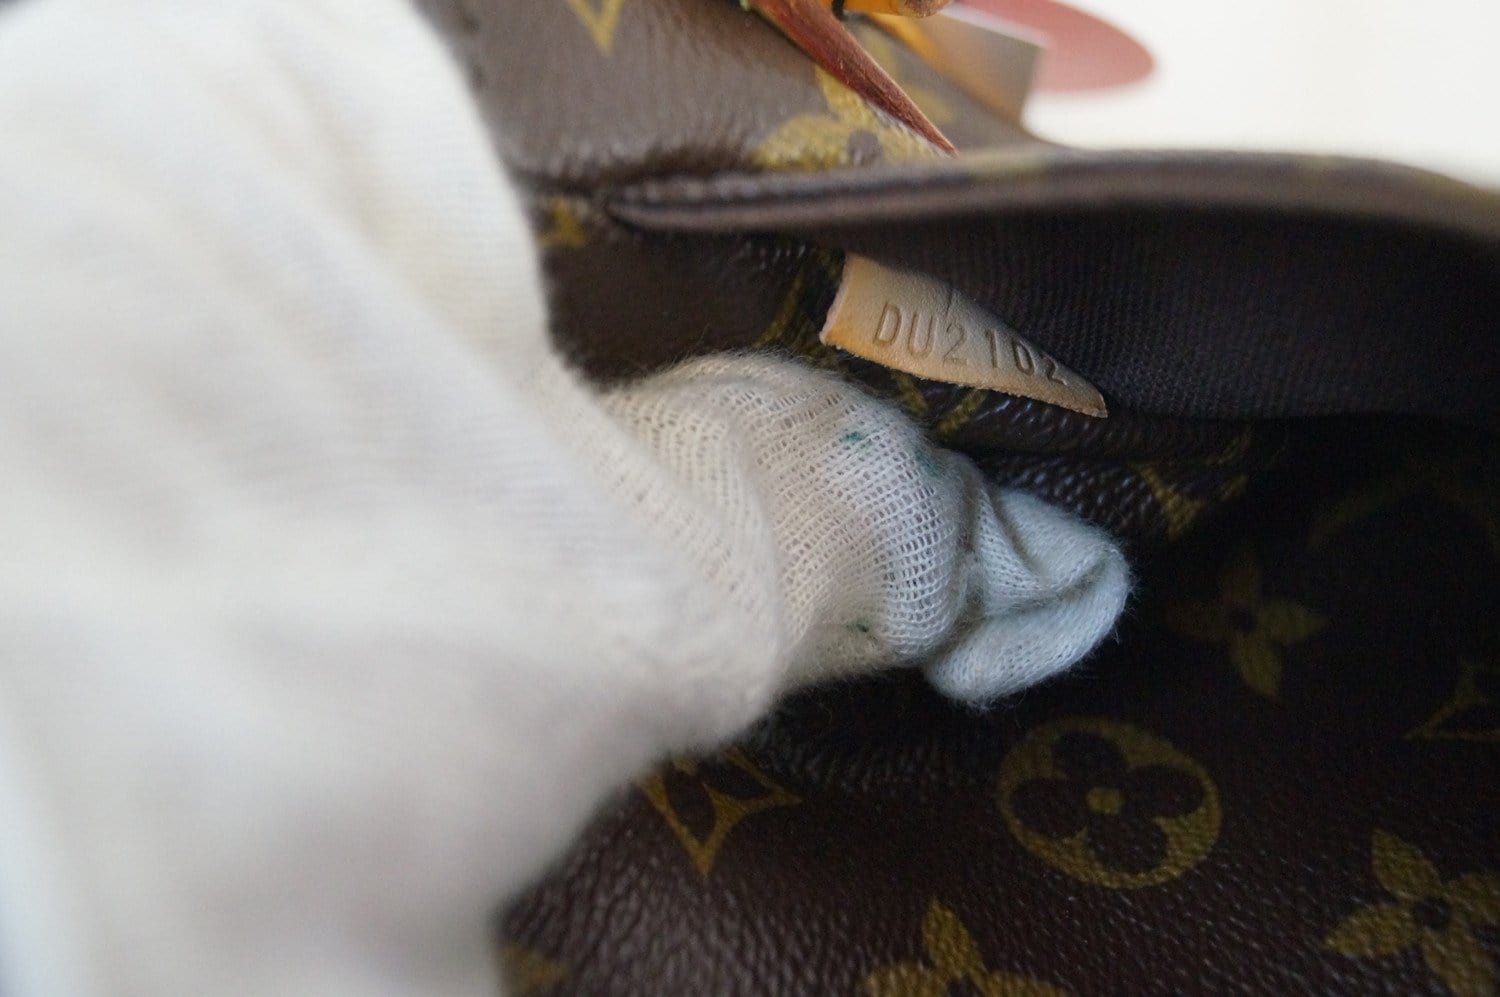 Auth Louis Vuitton Menilmontant Pm Bag #914L32